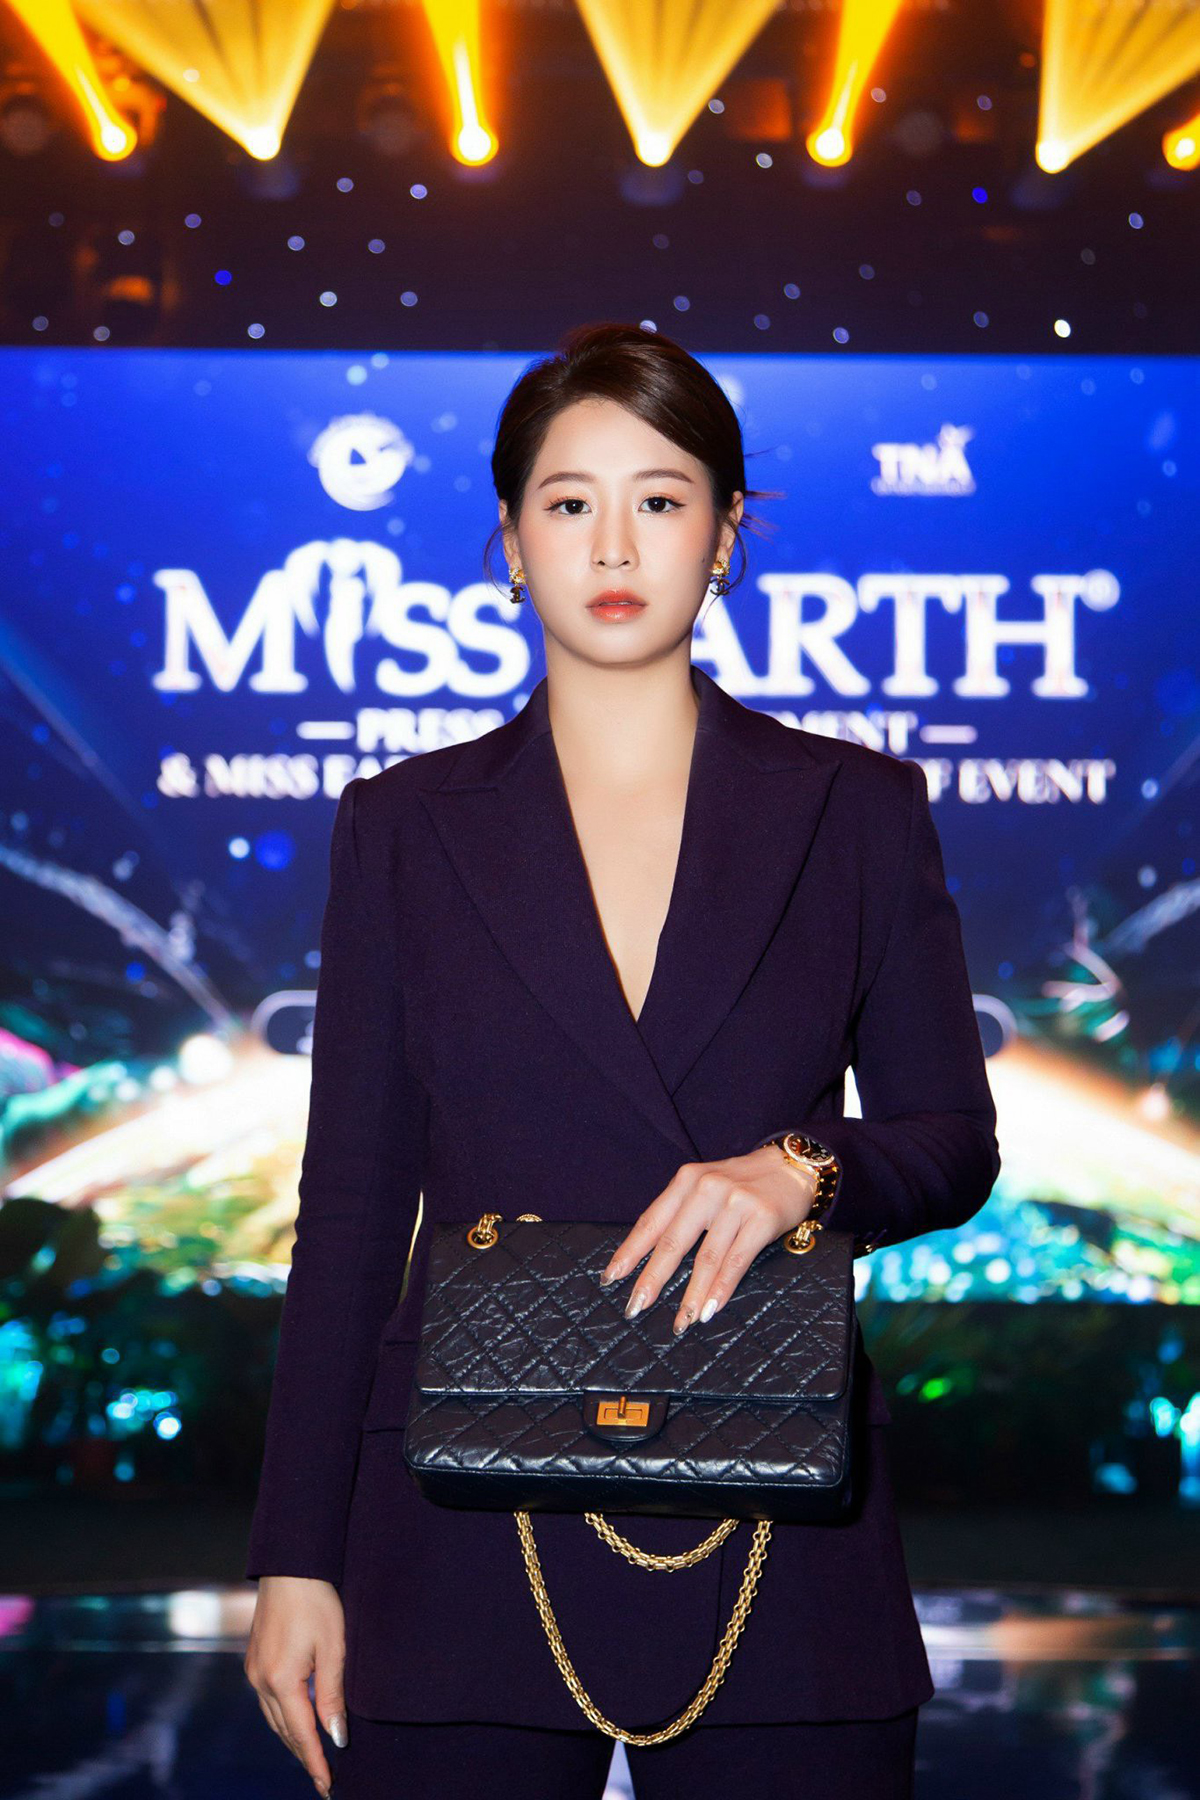 Giám khảo 9x của Miss Earth 2023 chọn 3 ứng viên sáng giá cho vương miện, đại diện Việt Nam được đánh giá thế nào? - ảnh 5